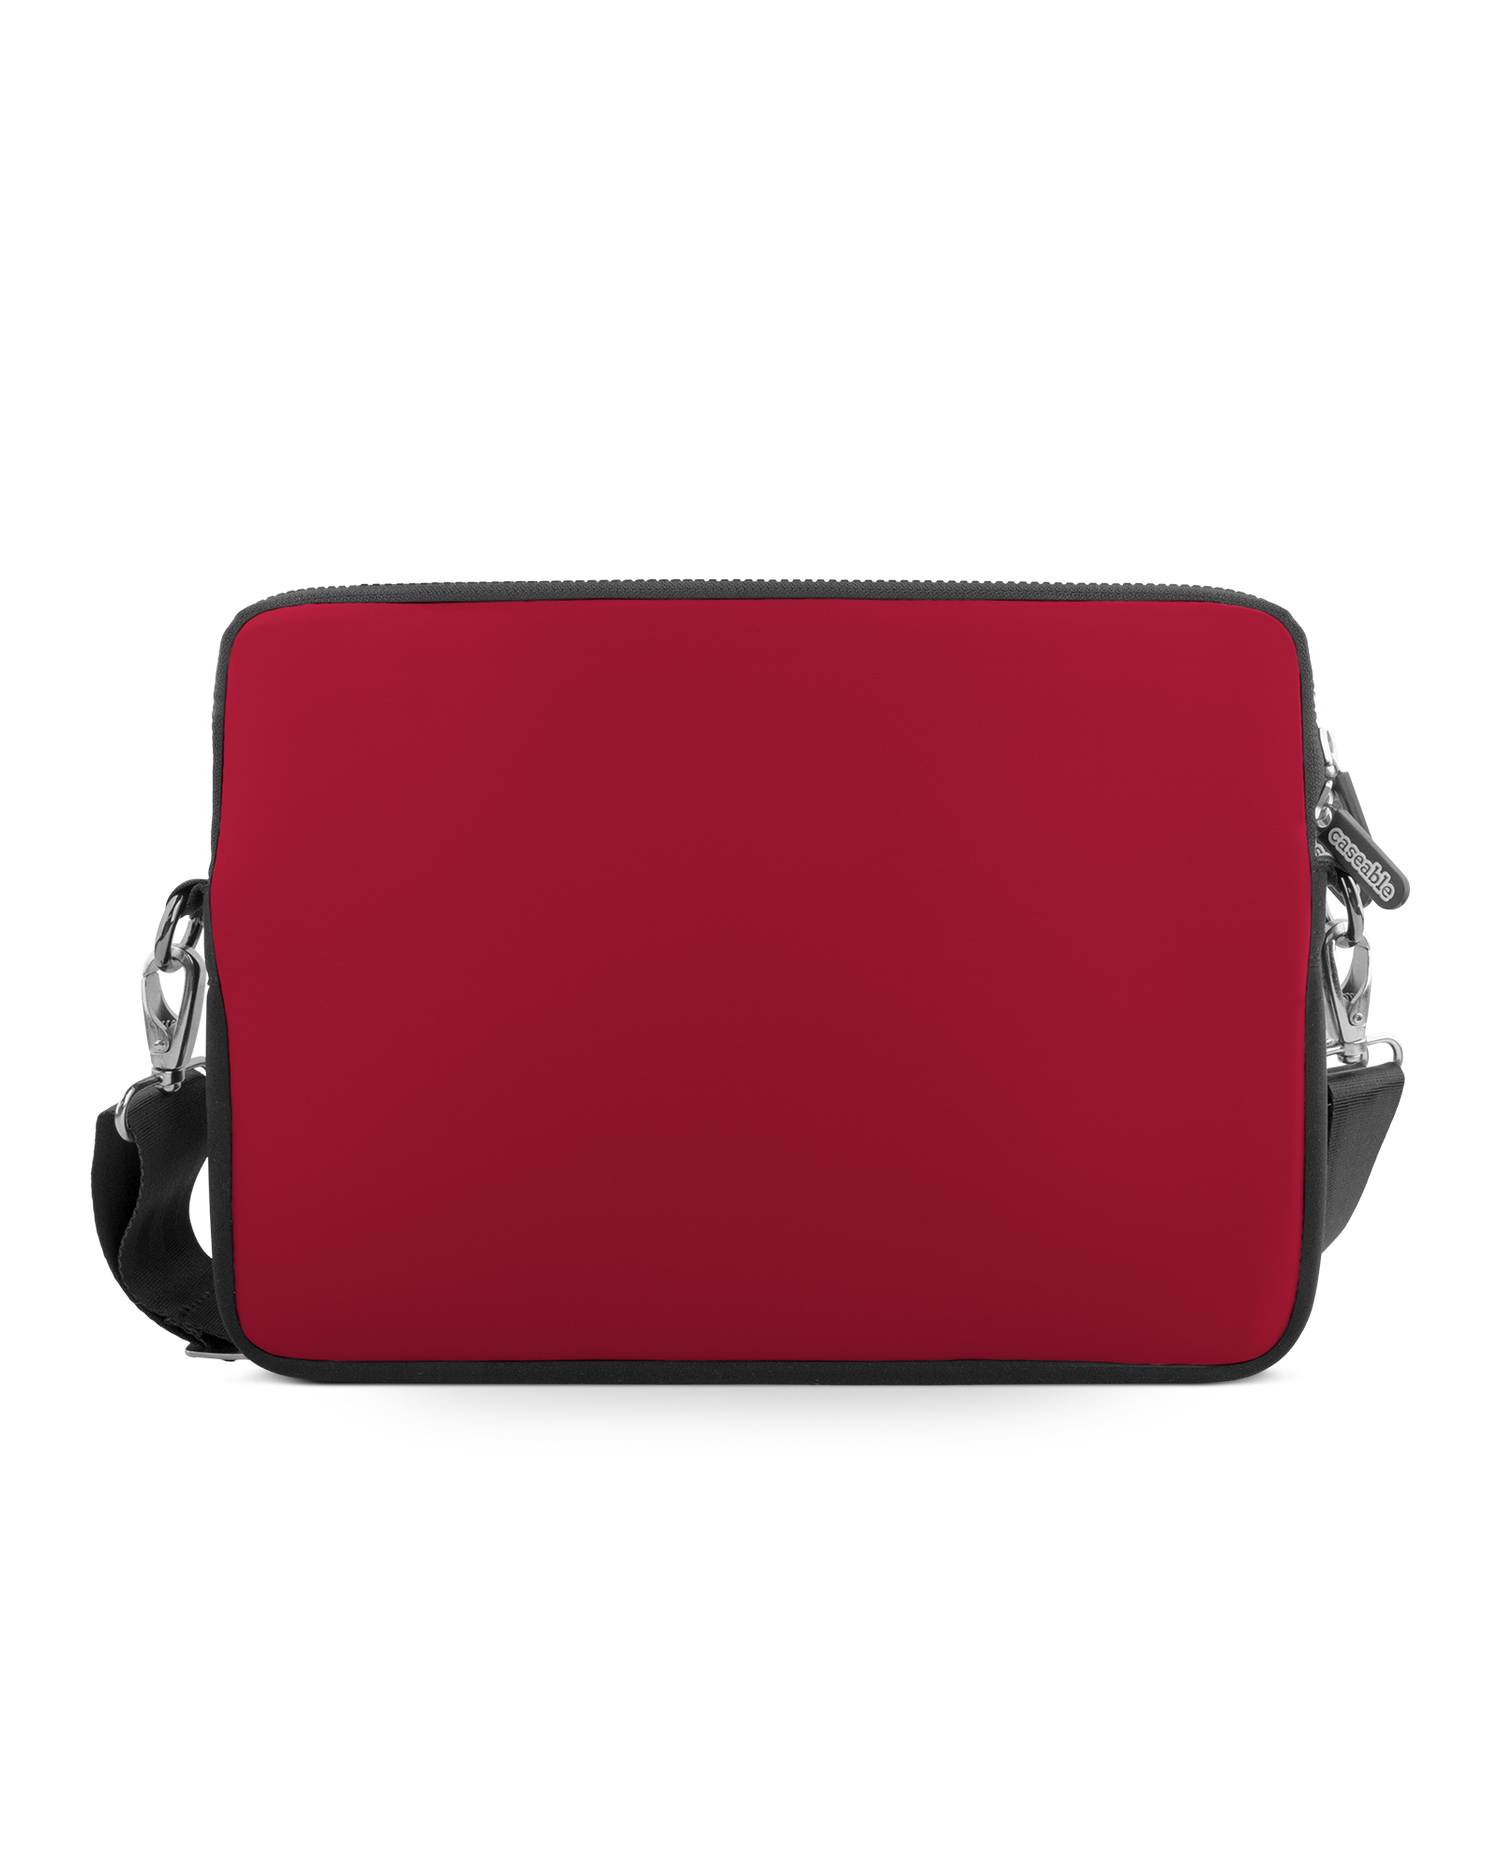 RED Premium Laptoptasche 13-14 Zoll: Vorderansicht